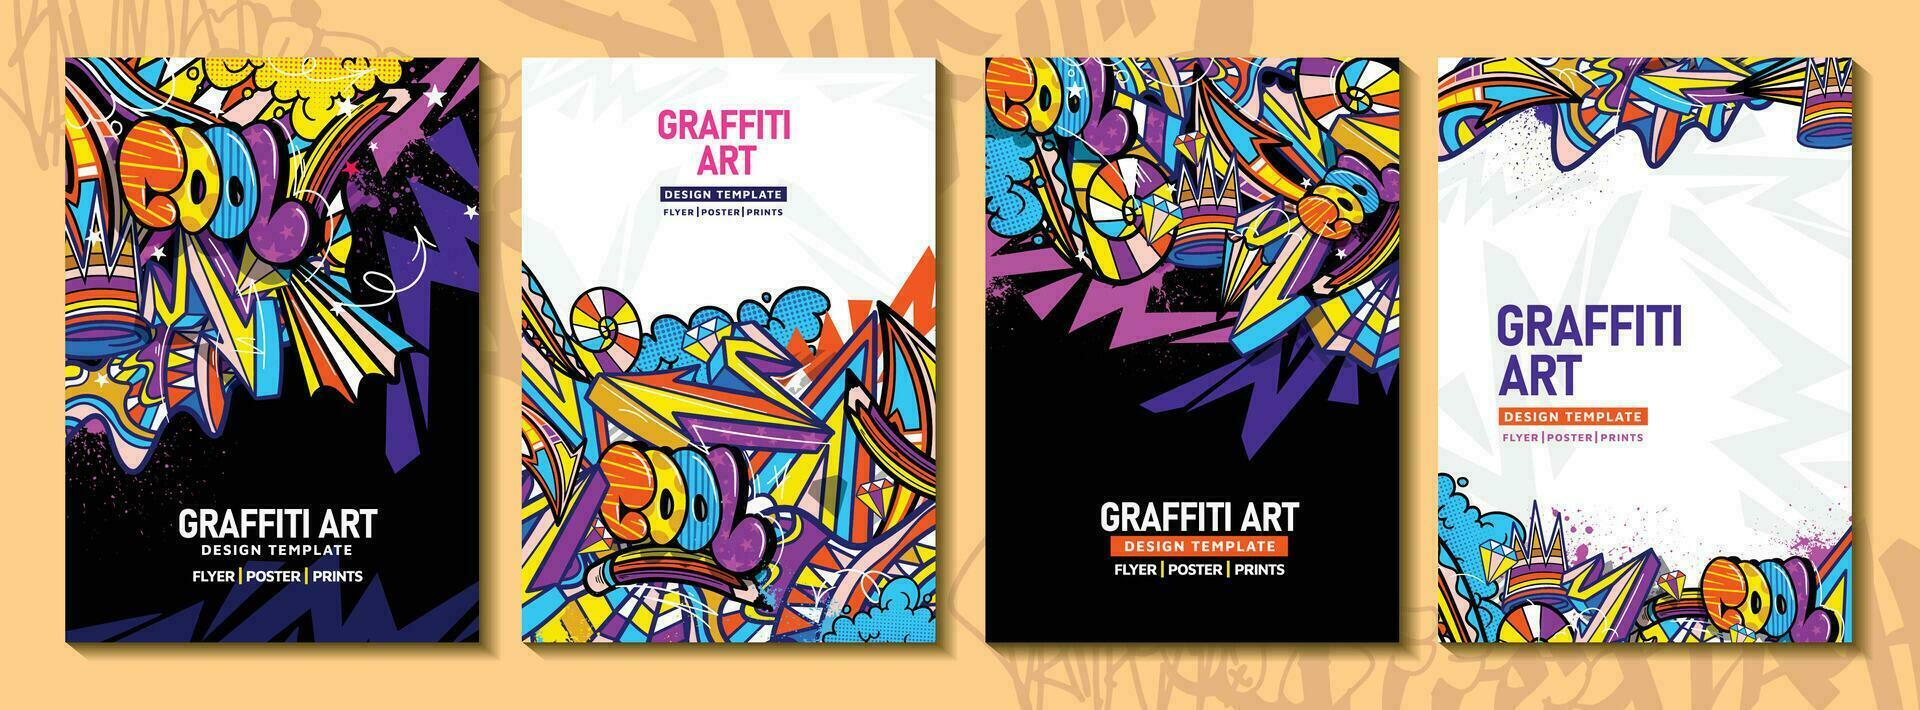 modern tekening graffiti kunst poster of folder sjabloon met kleurrijk ontwerp. hand getekend abstract graffiti illustratie vector in straat kunst thema